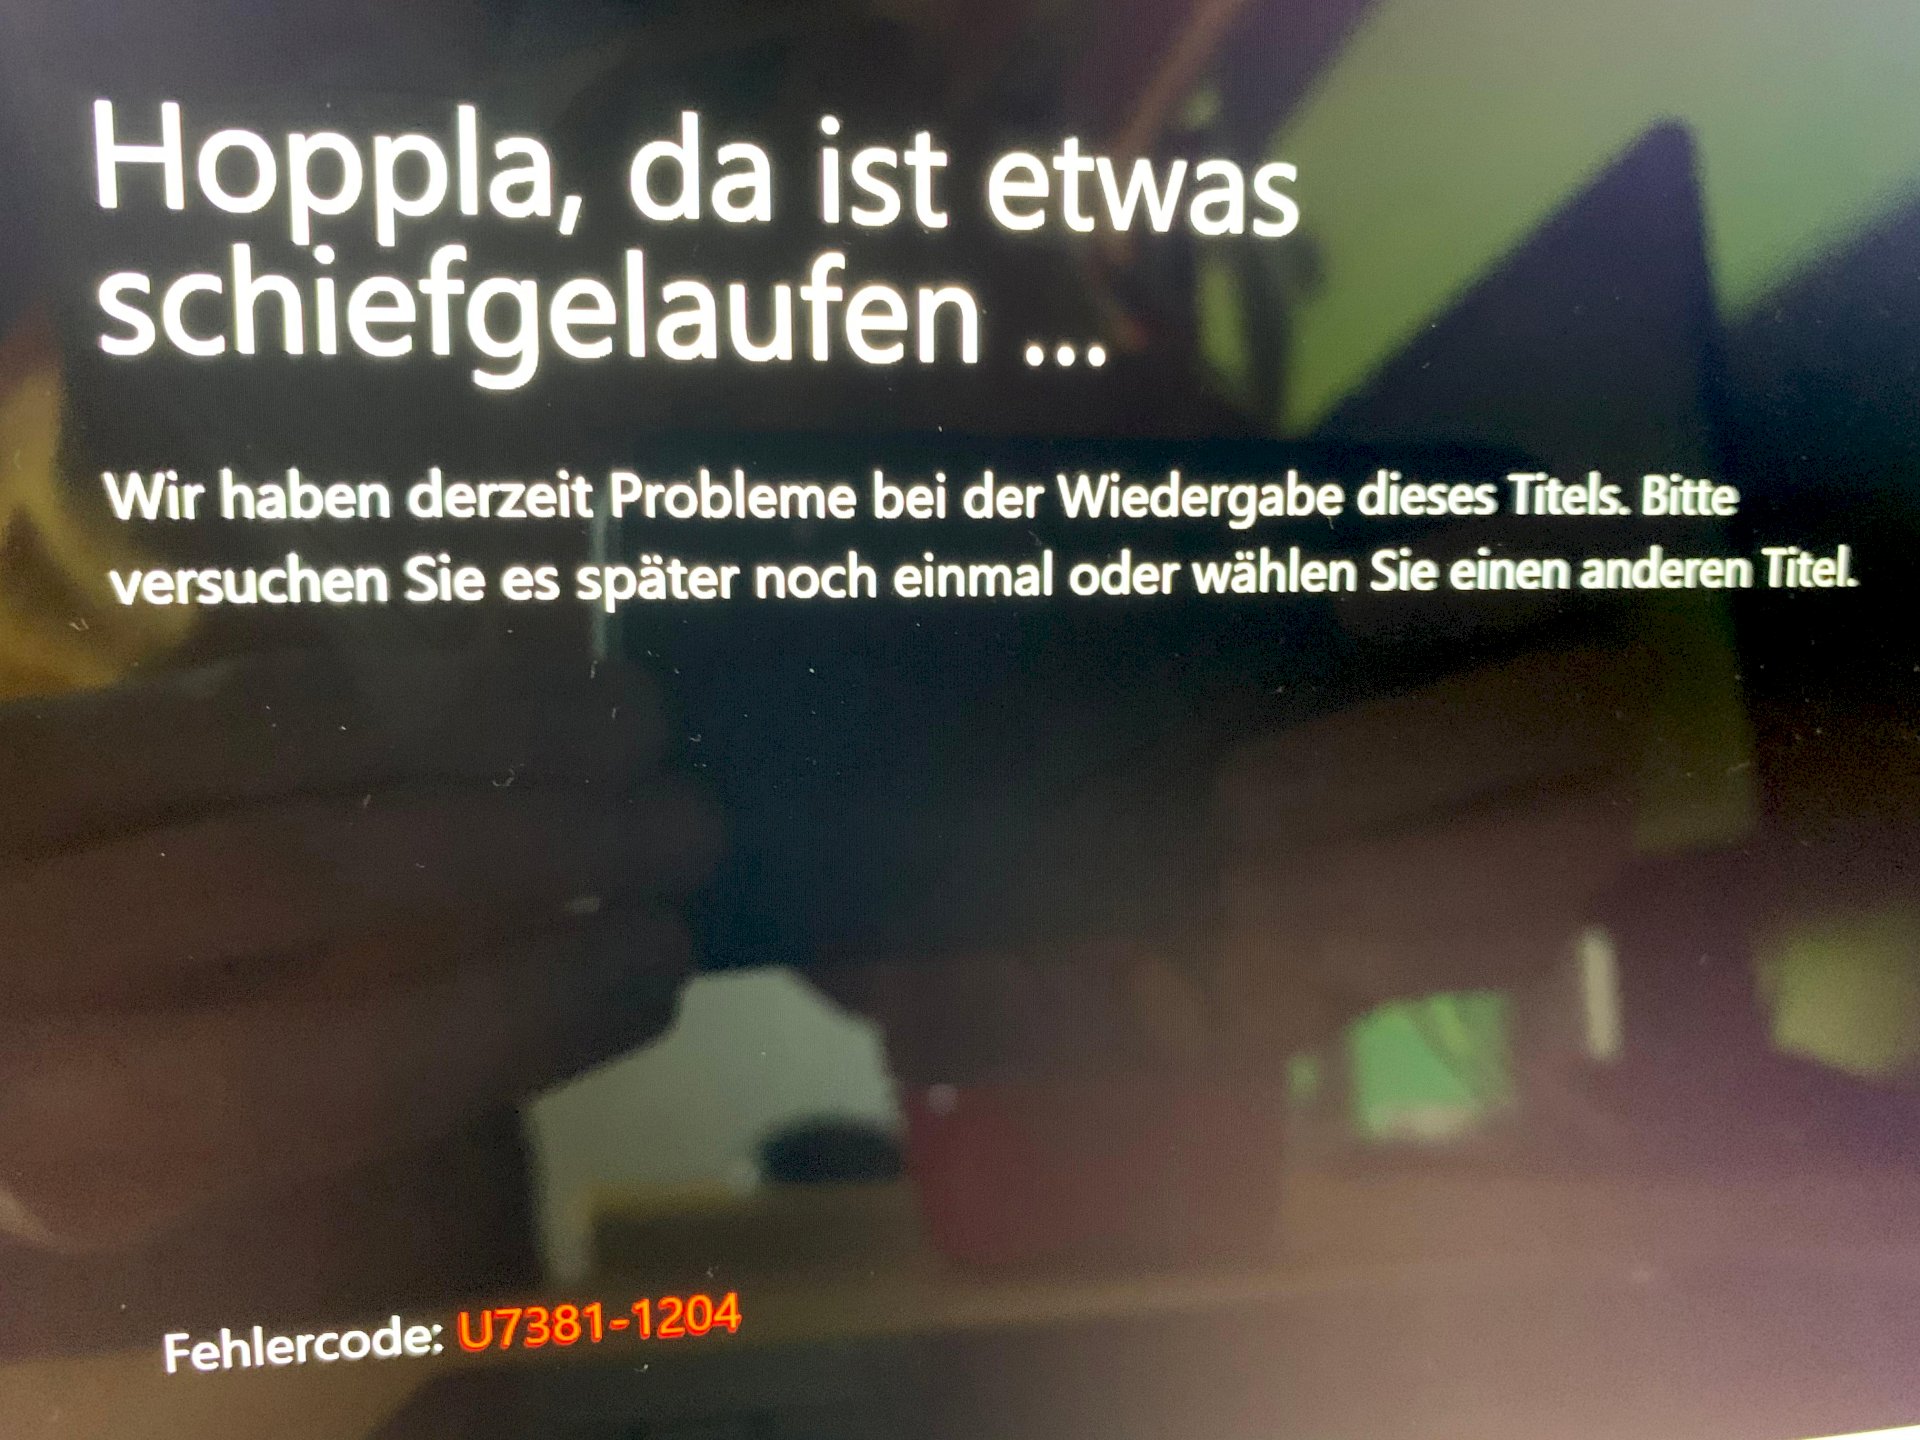 Netflix error message, what to do